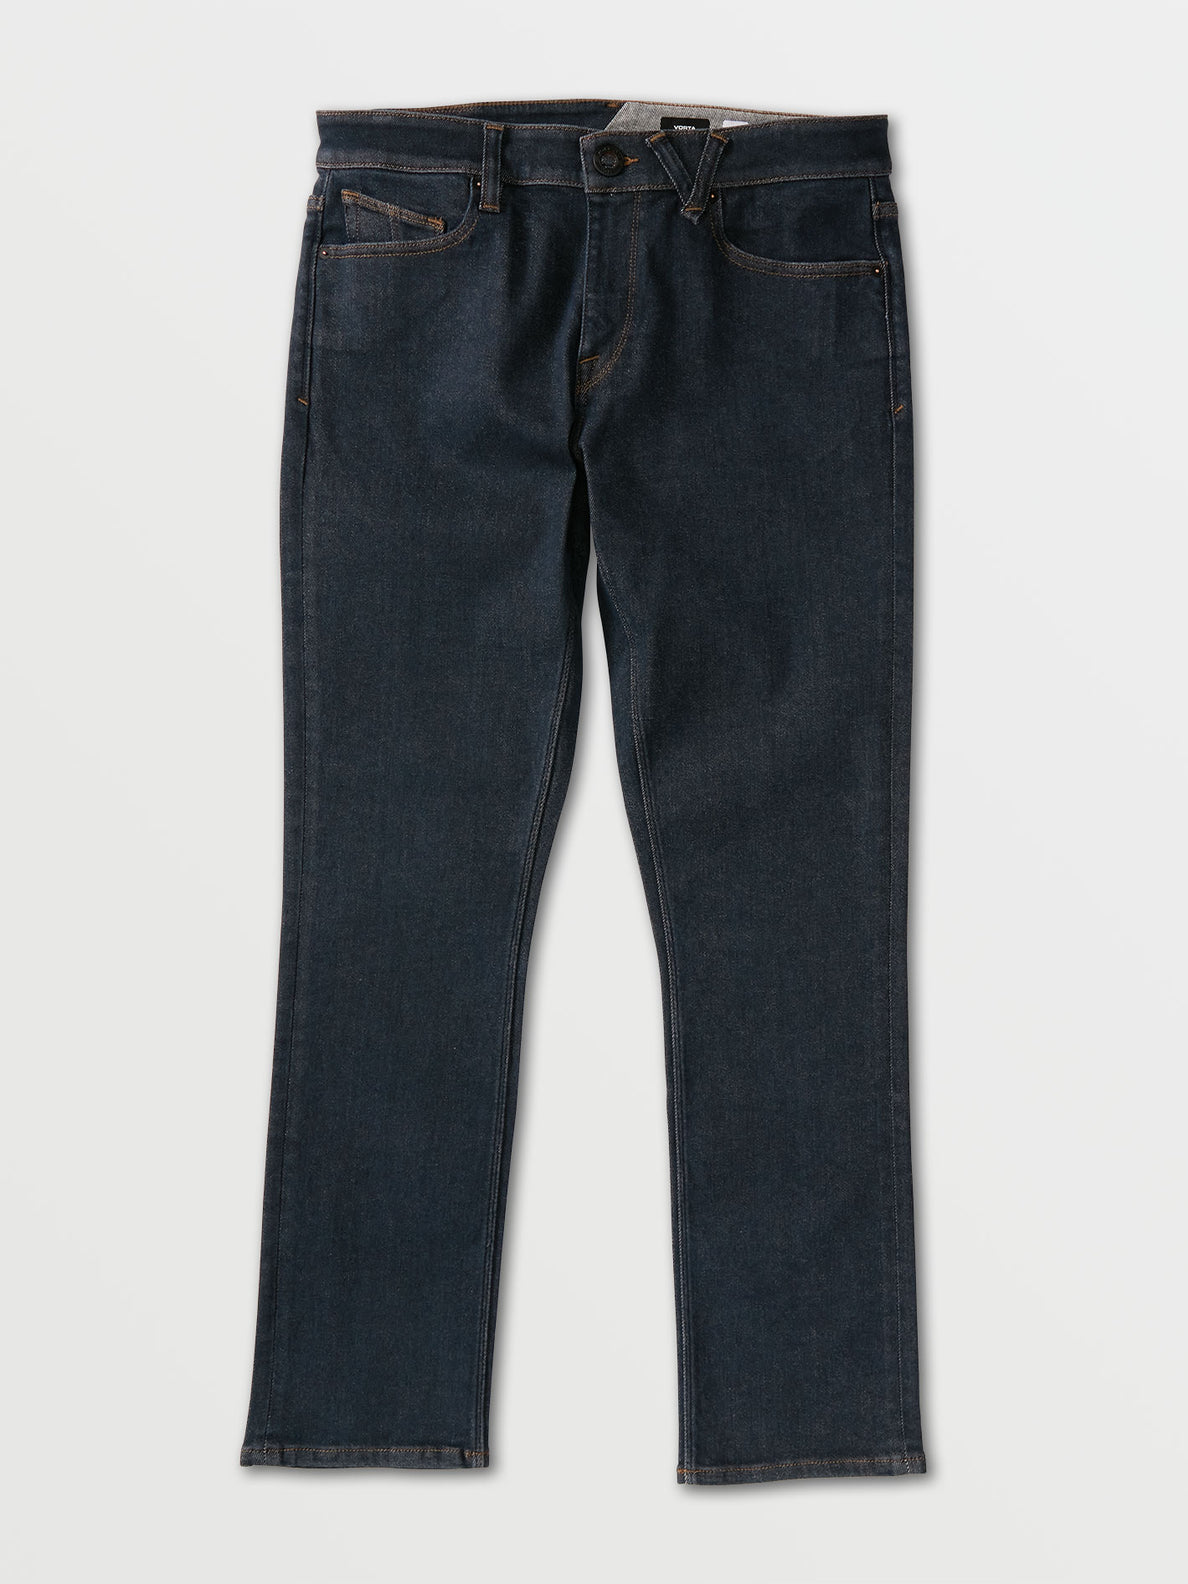 Vorta Slim Fit Jeans - Grey Indigo Rinse (A1931501_GIR) [F]